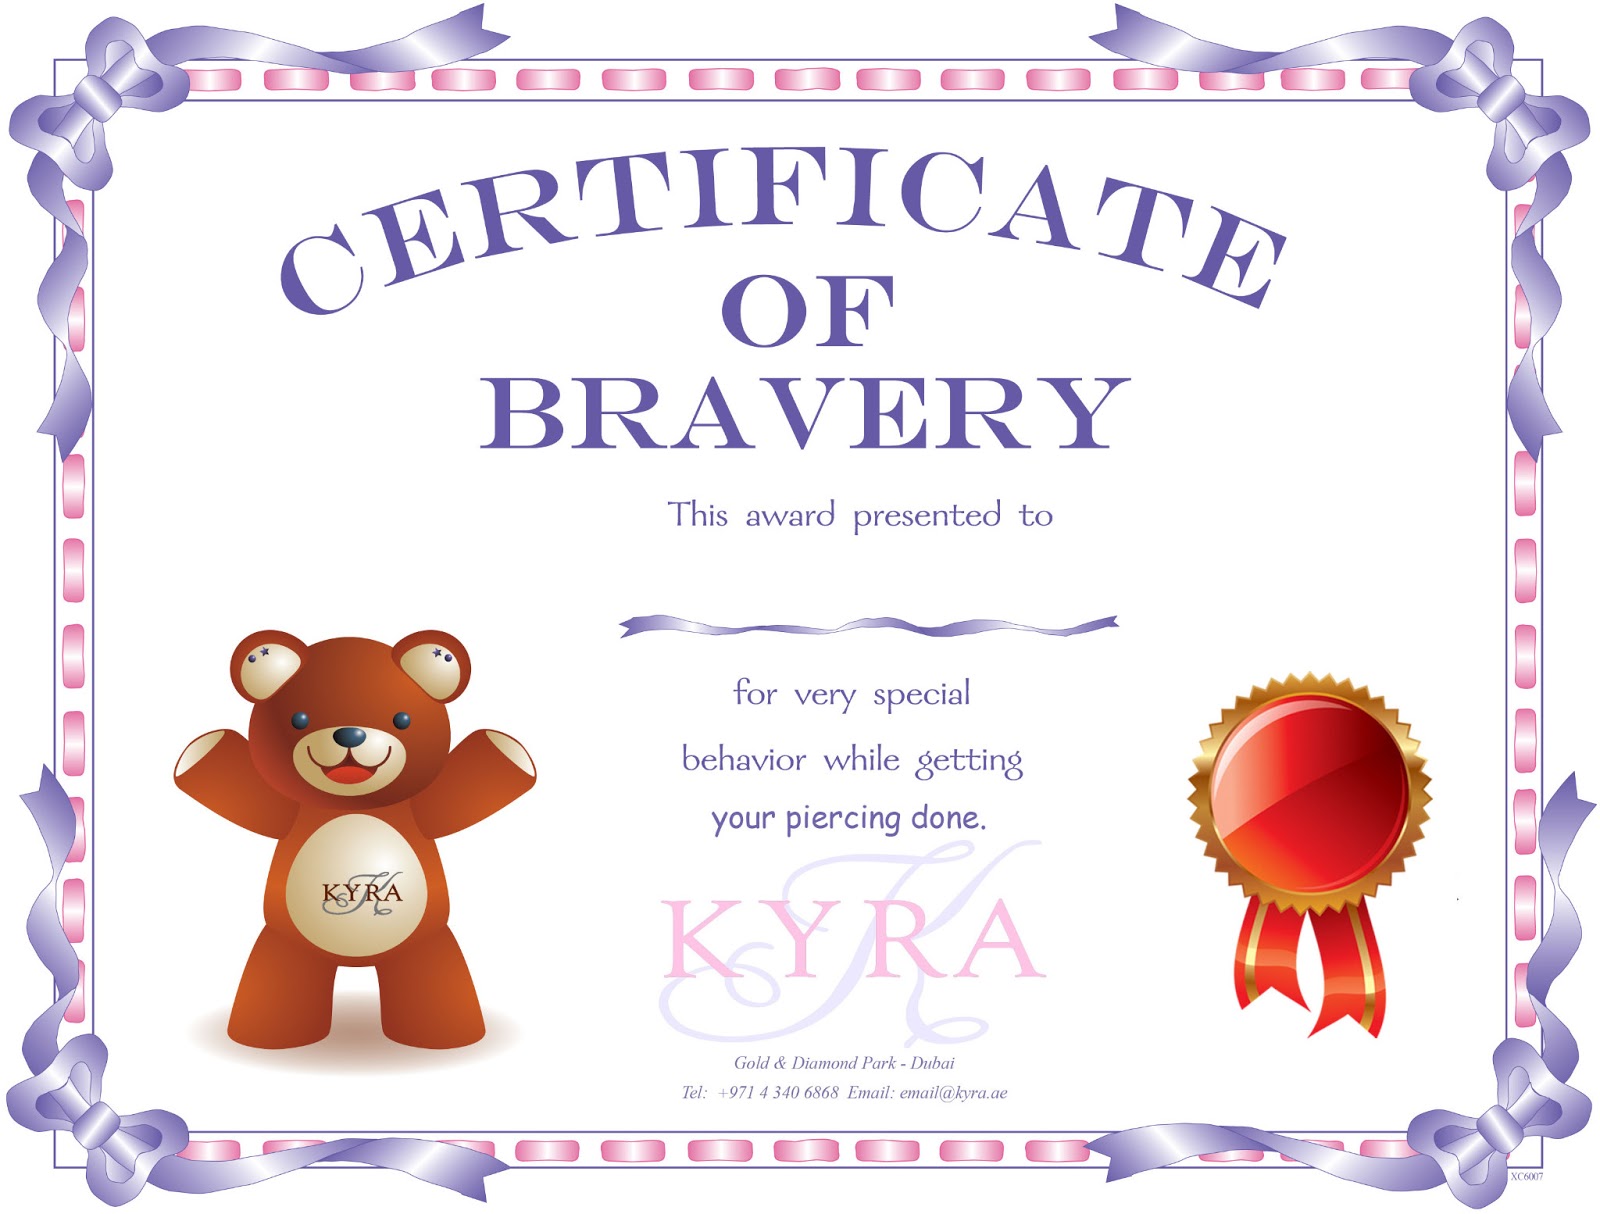 www-kyra-ae-kyra-certificate-of-bravery